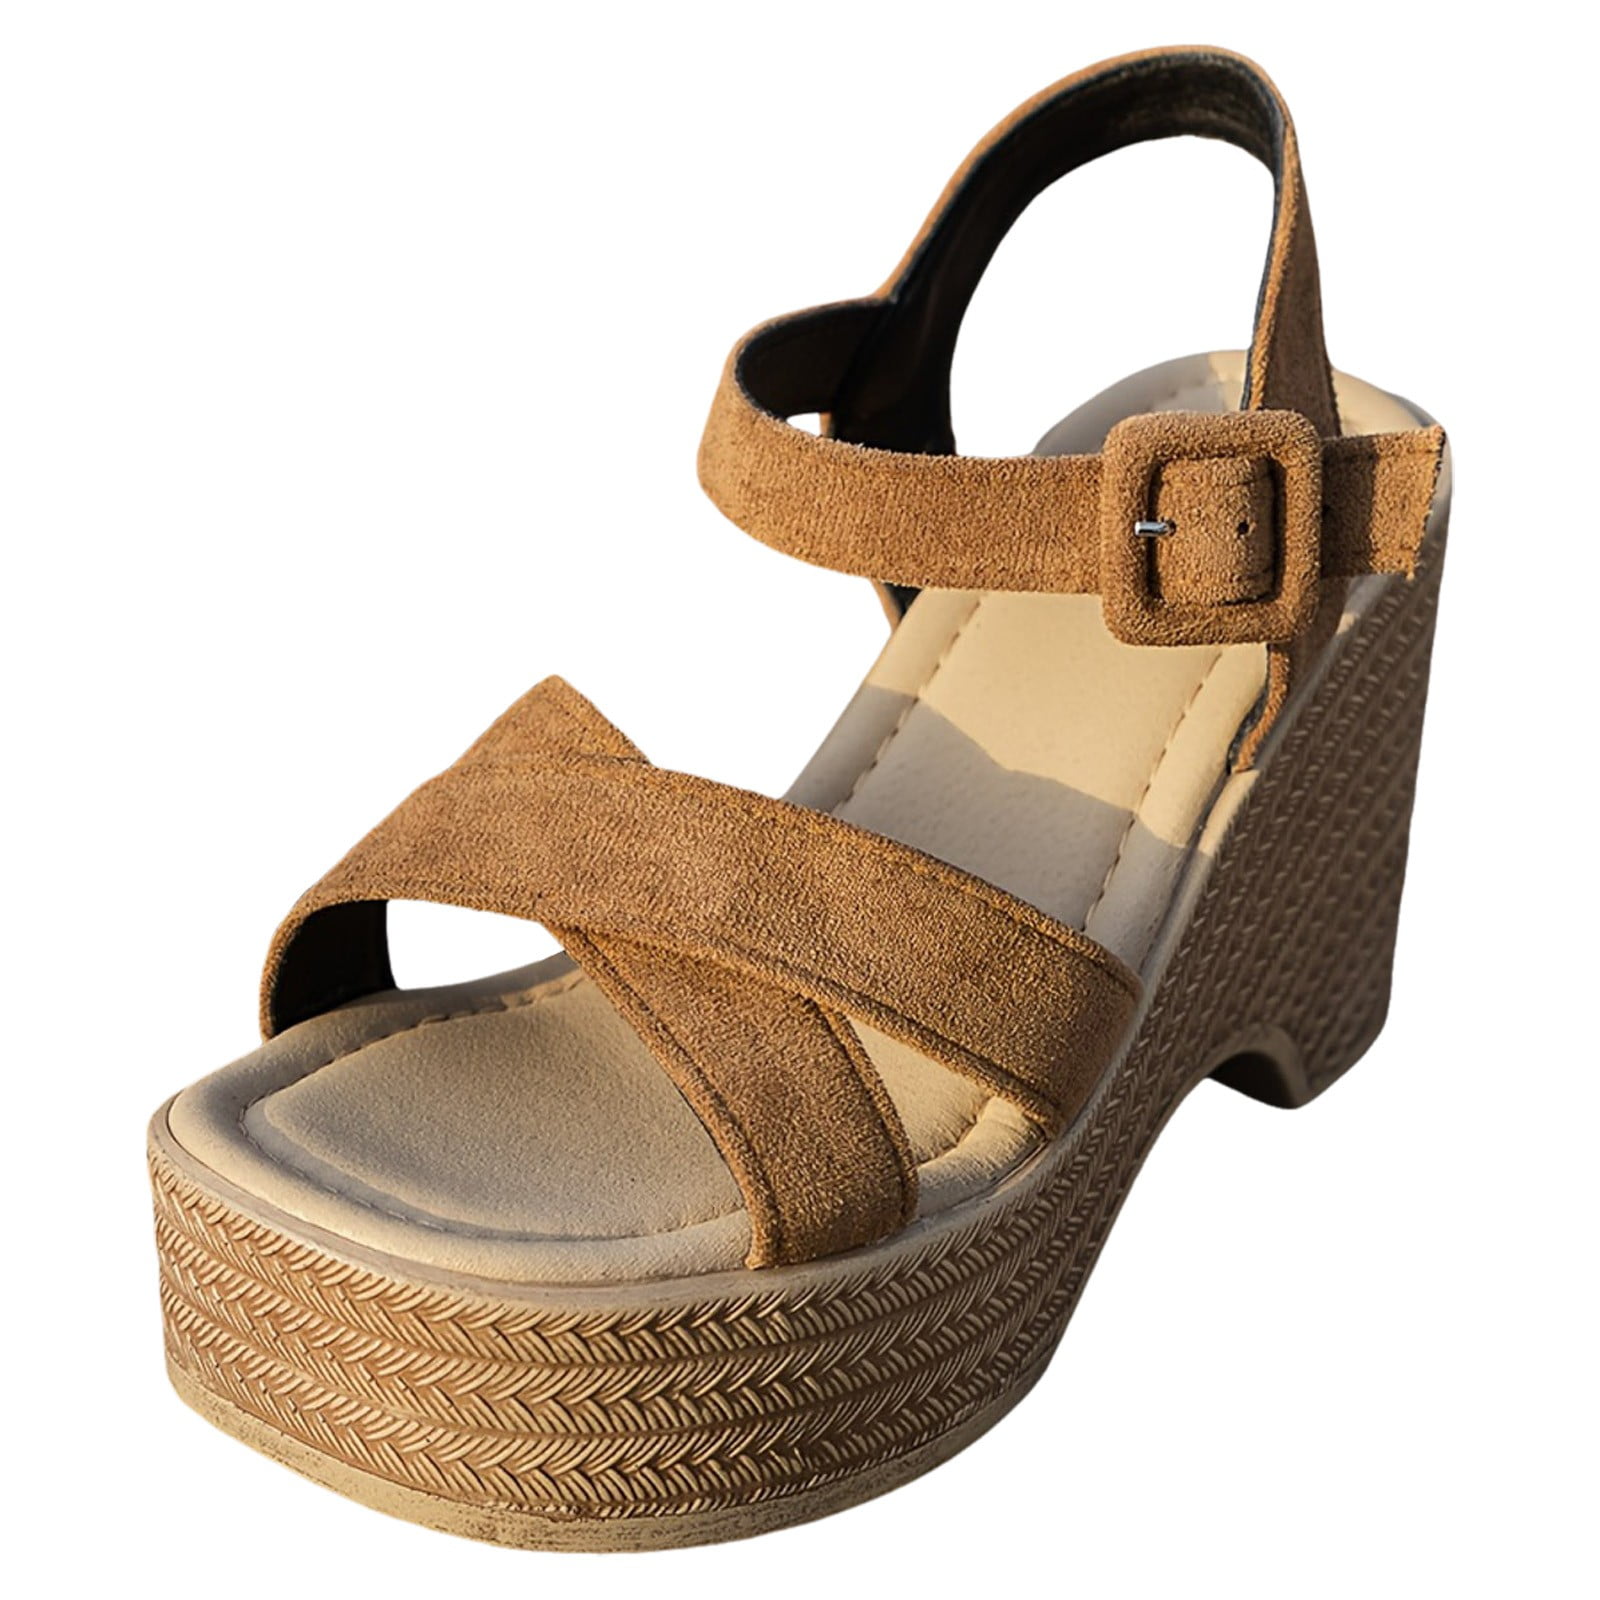 RUICUW Women's Platform Sandals Casual Open Toe Summer Shoes ...